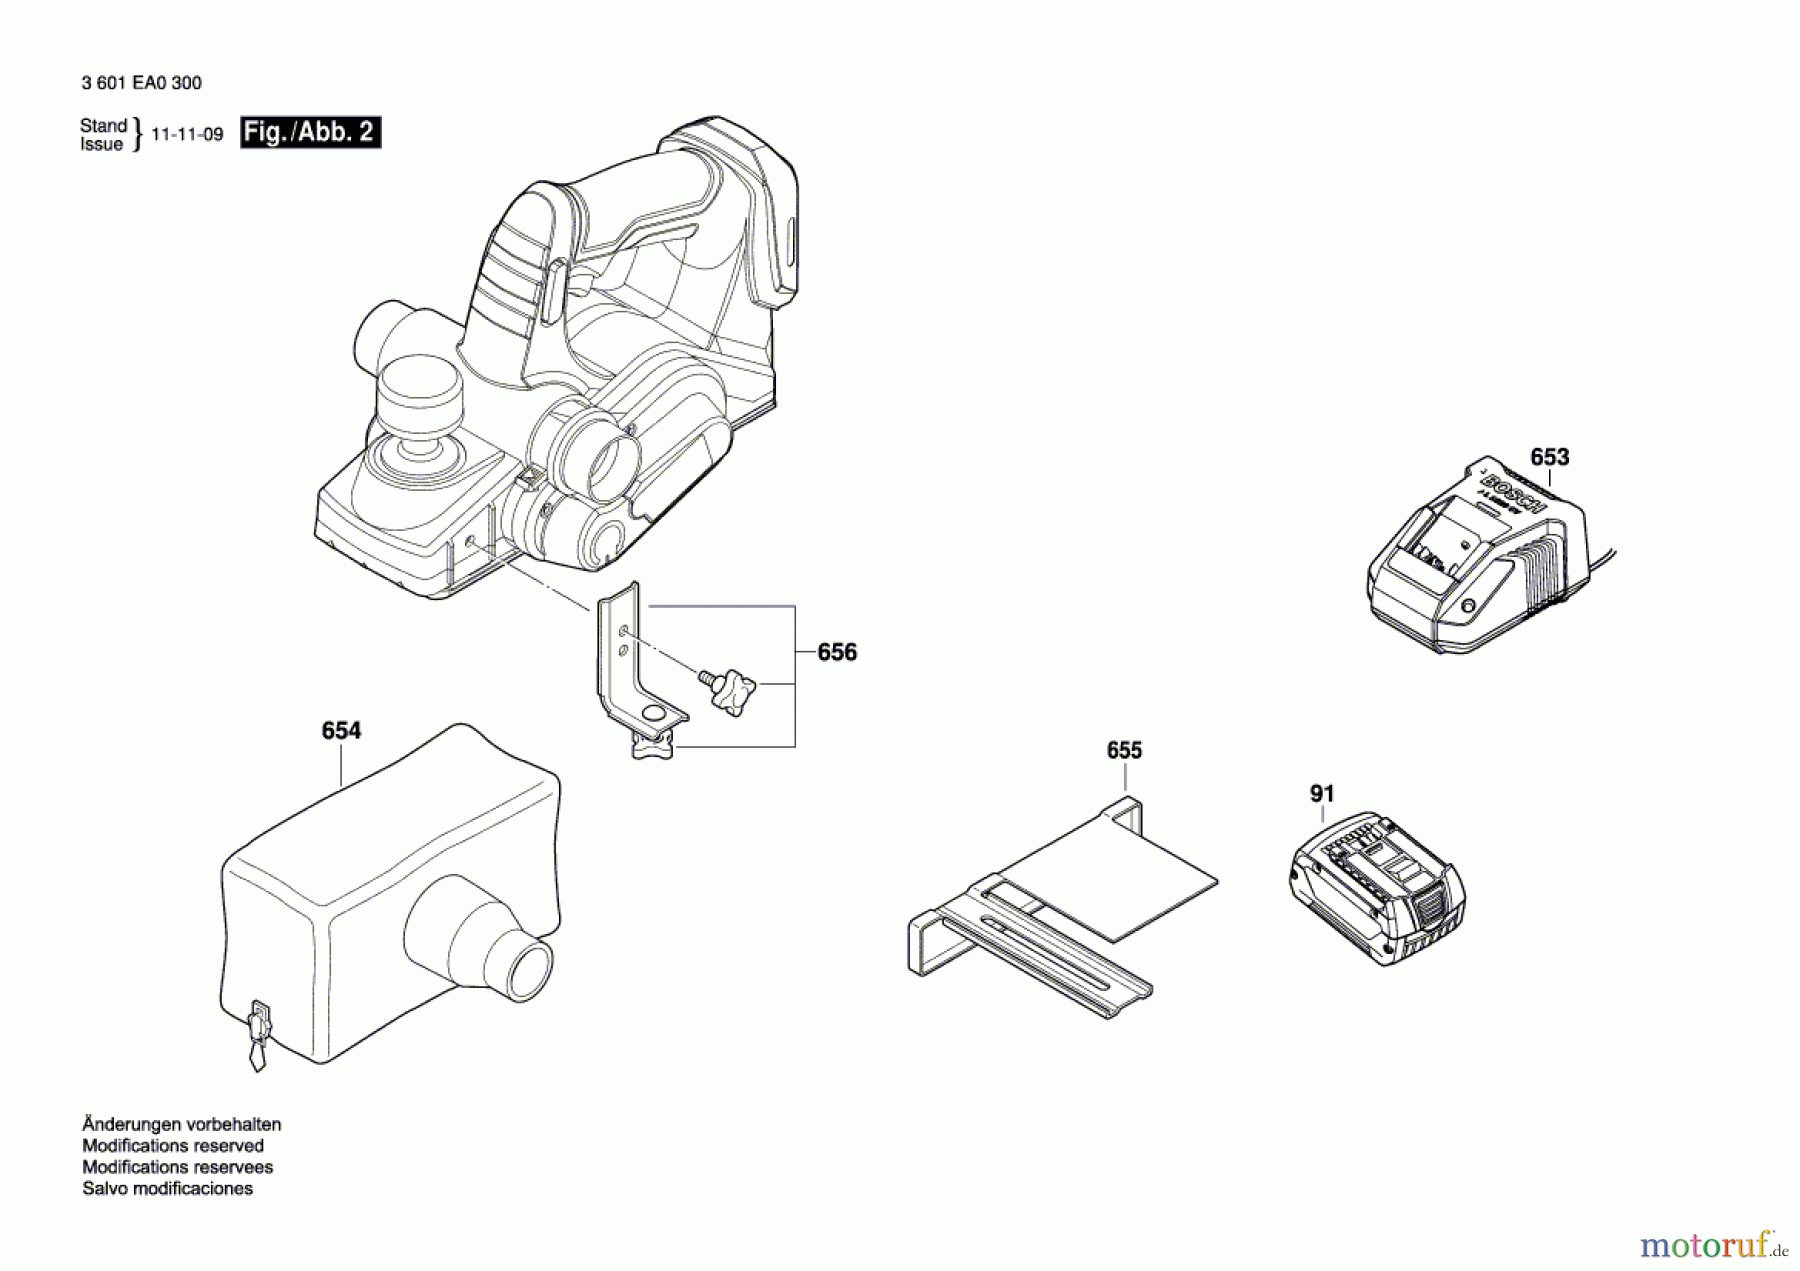  Bosch Werkzeug Handhobel GHO 18 V-LI Seite 2